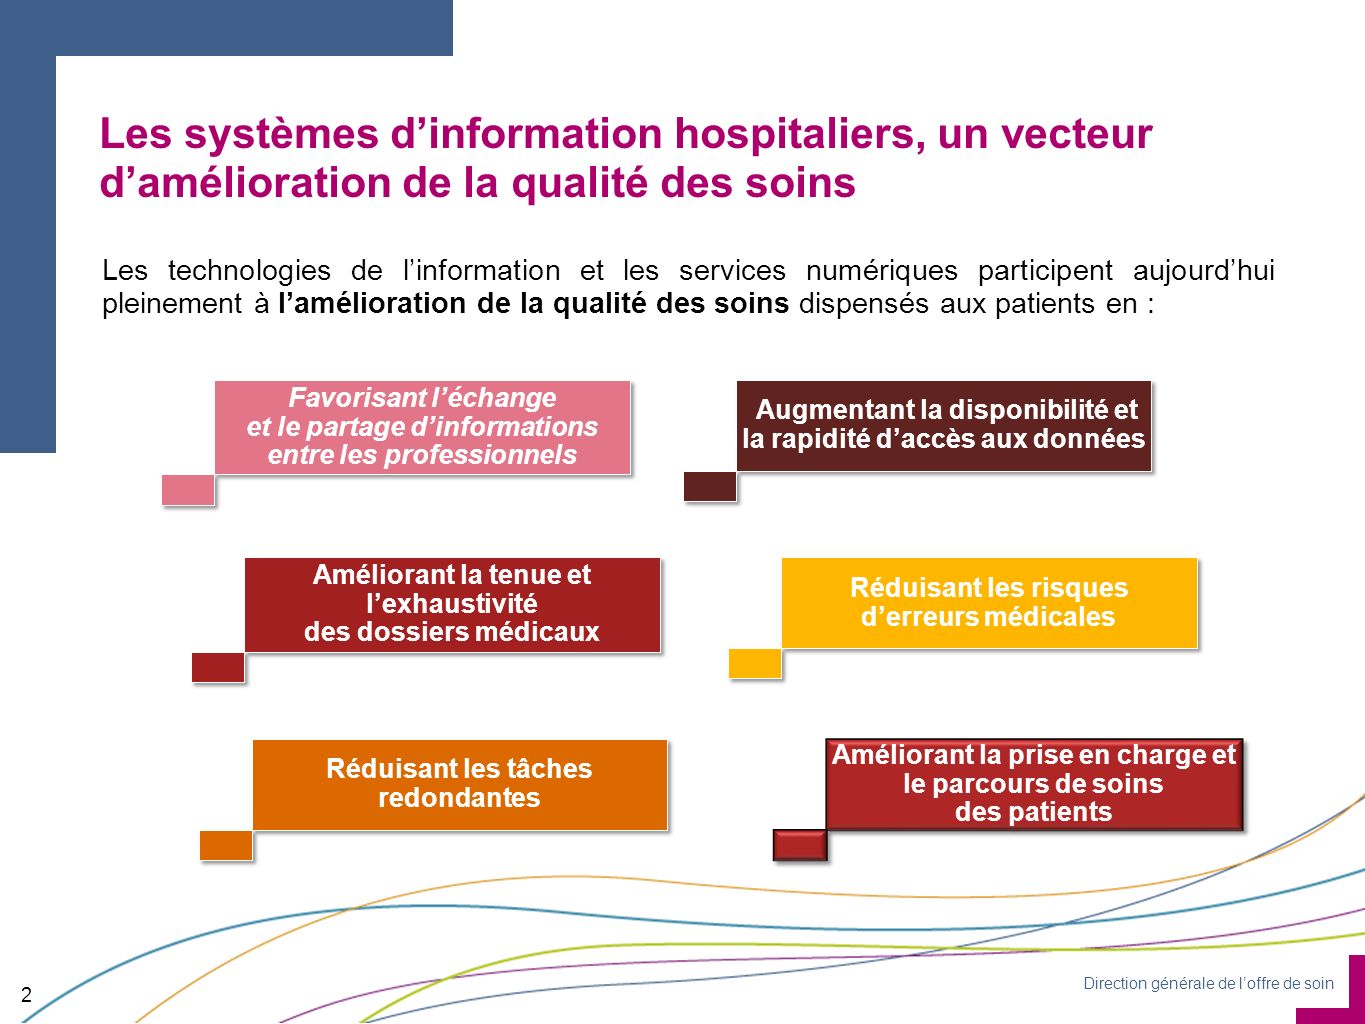 Les systèmes d’information hospitaliers, un vecteur d’amélioration de la qualité des soins